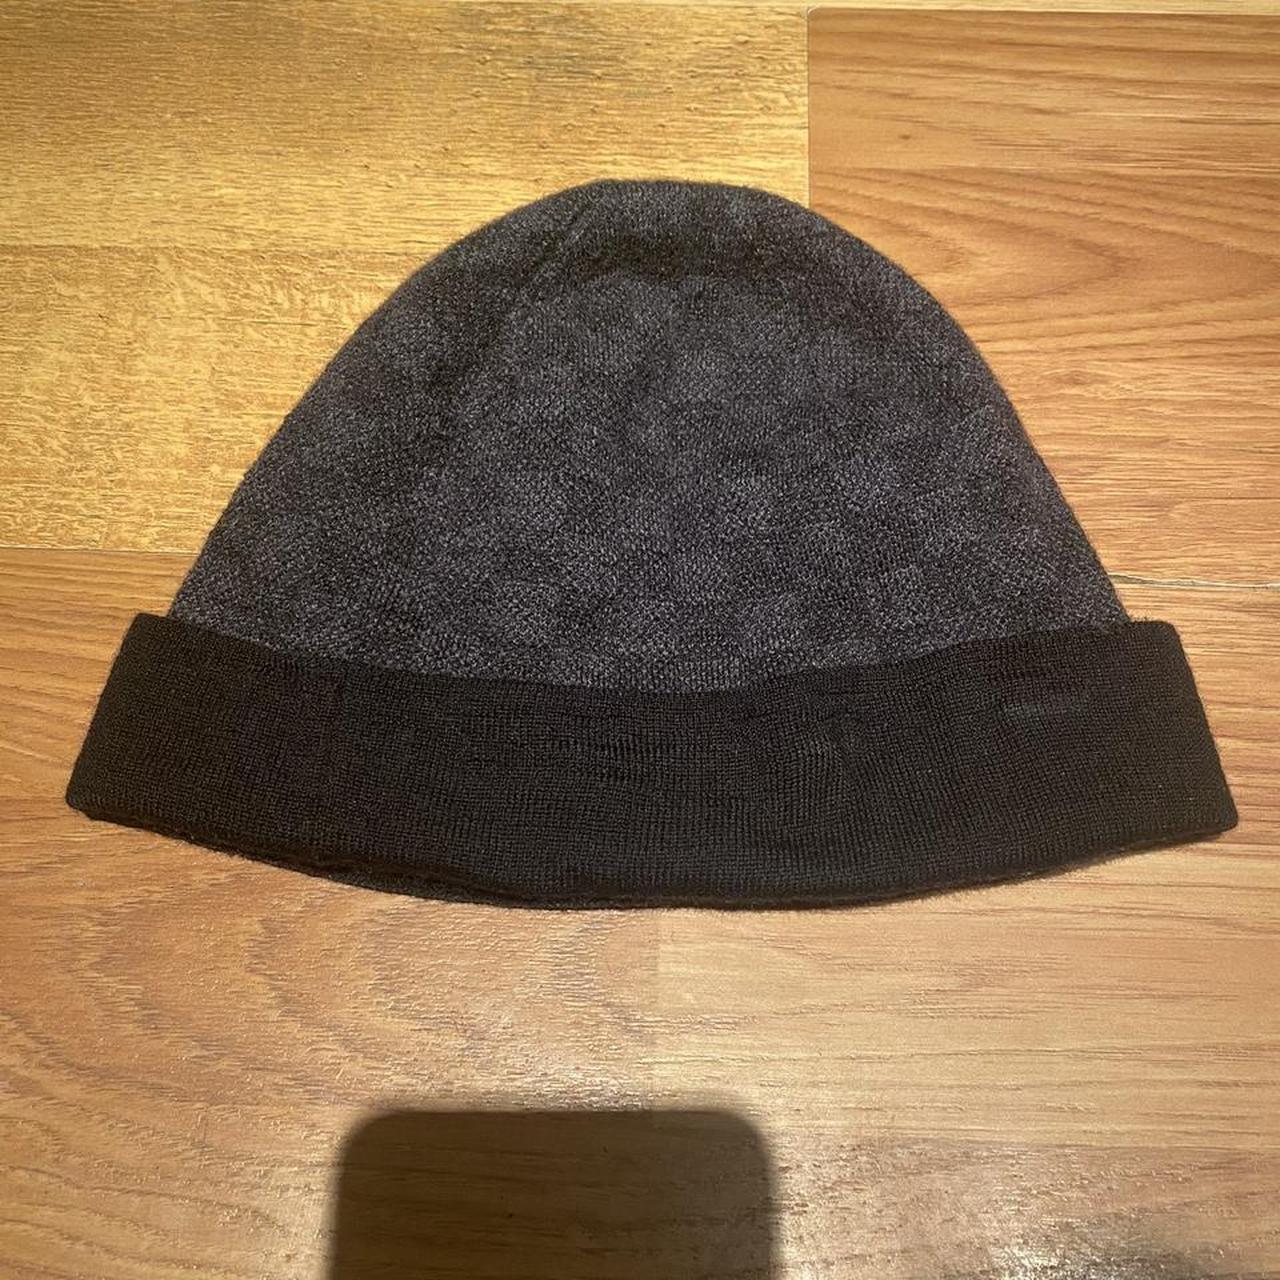 Louis Vuitton hat - Depop